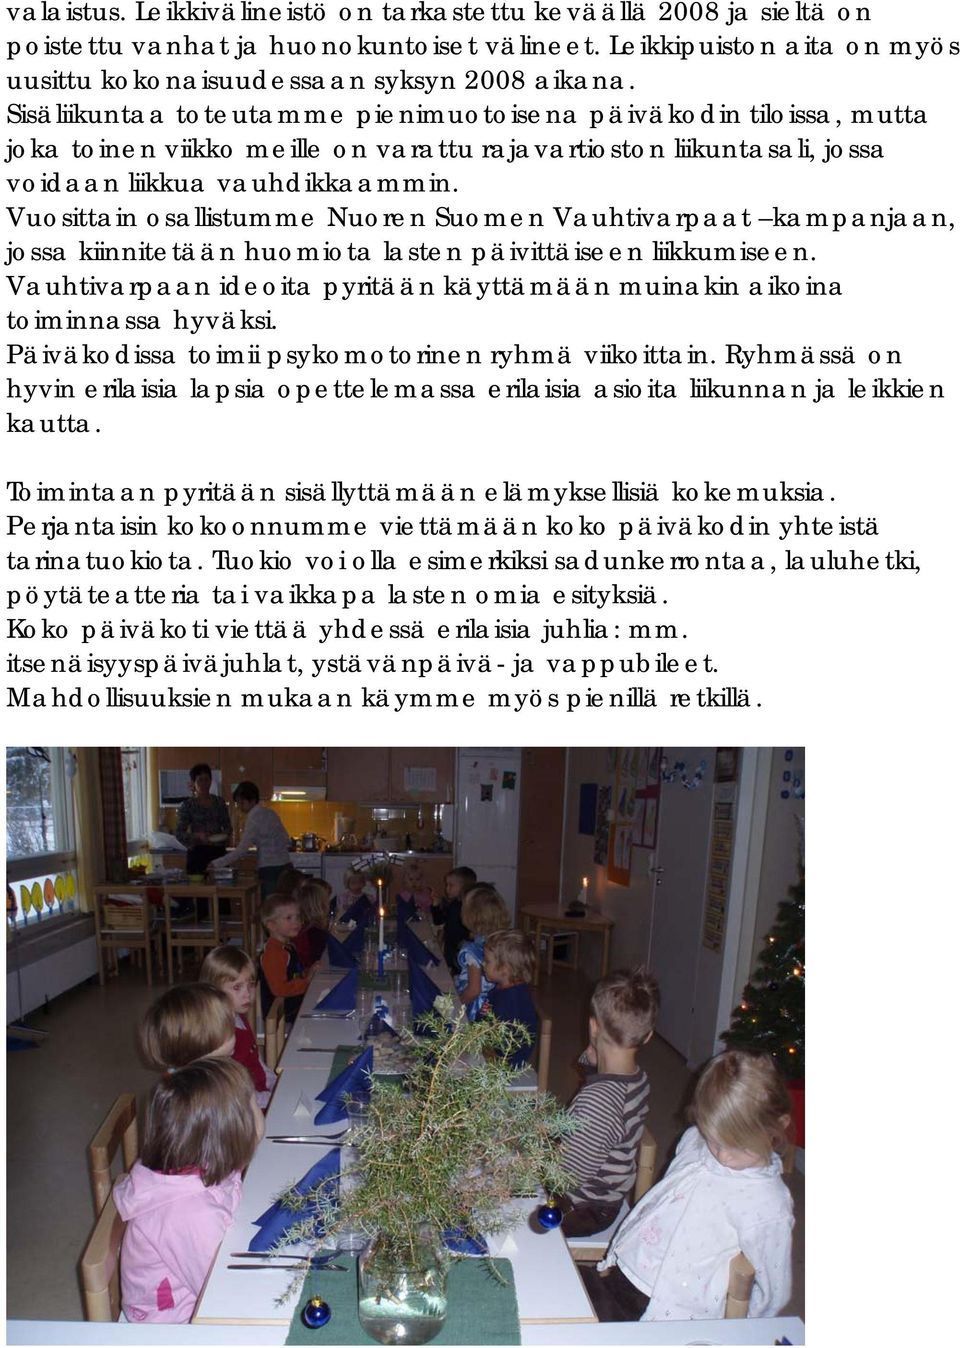 Vuosittain osallistumme Nuoren Suomen Vauhtivarpaat kampanjaan, jossa kiinnitetään huomiota lasten päivittäiseen liikkumiseen.